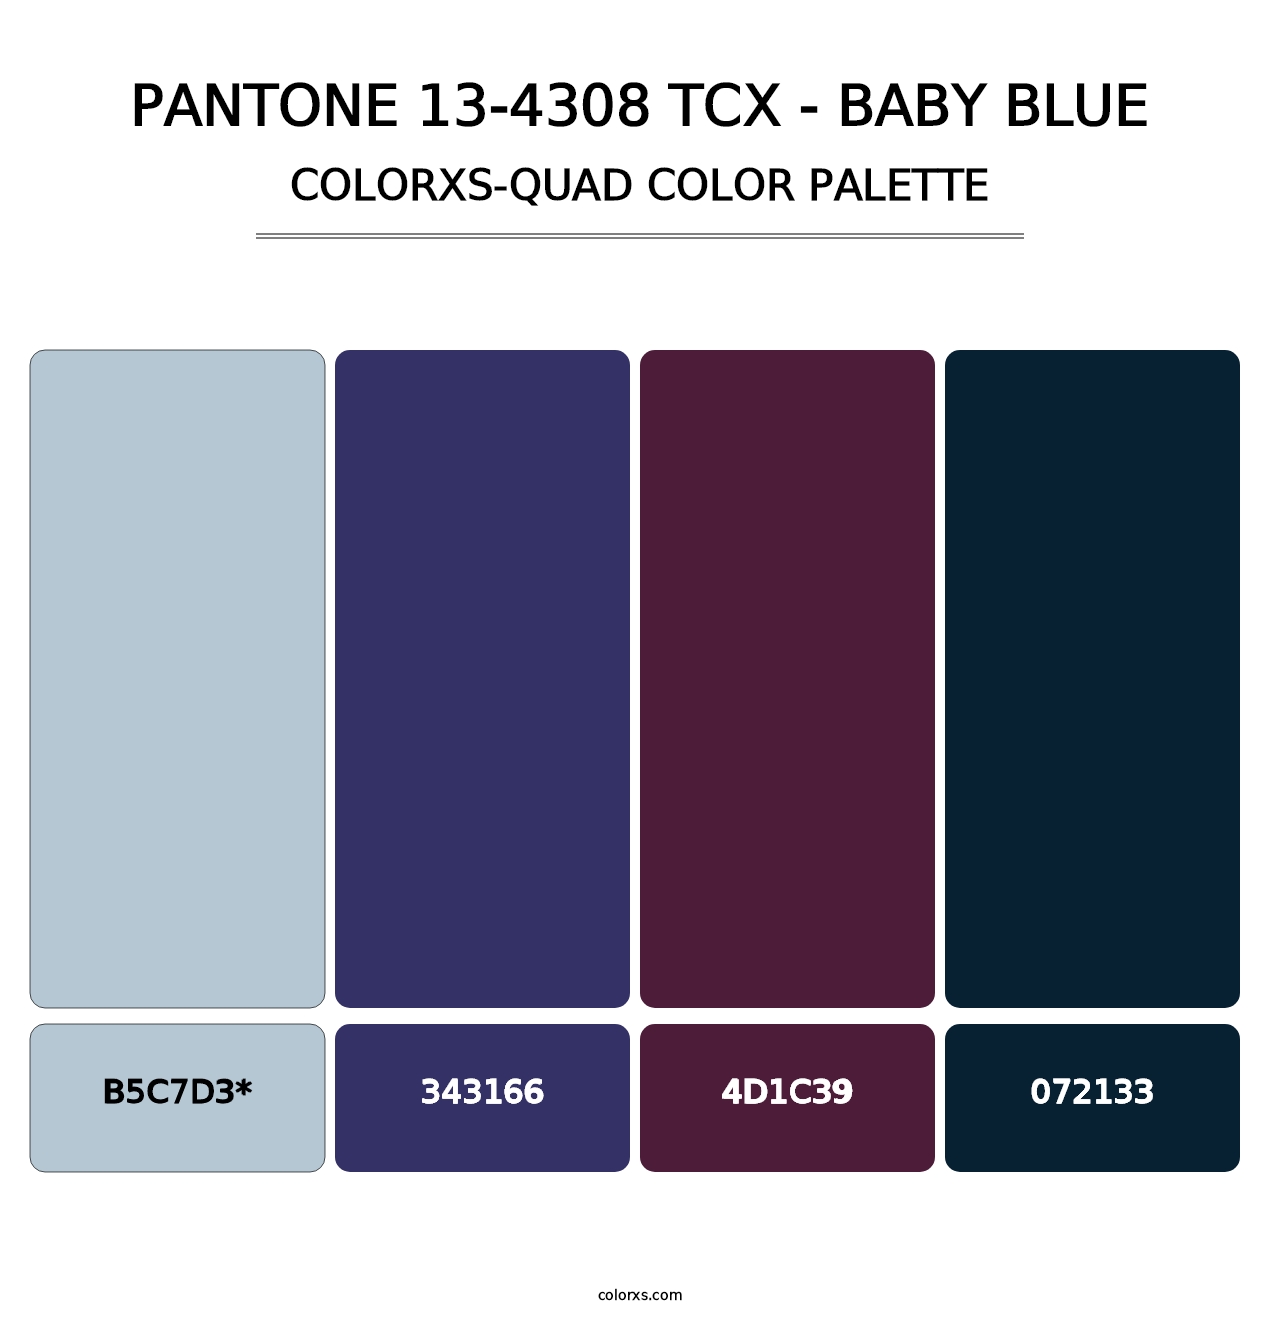 PANTONE 13-4308 TCX - Baby Blue - Colorxs Quad Palette